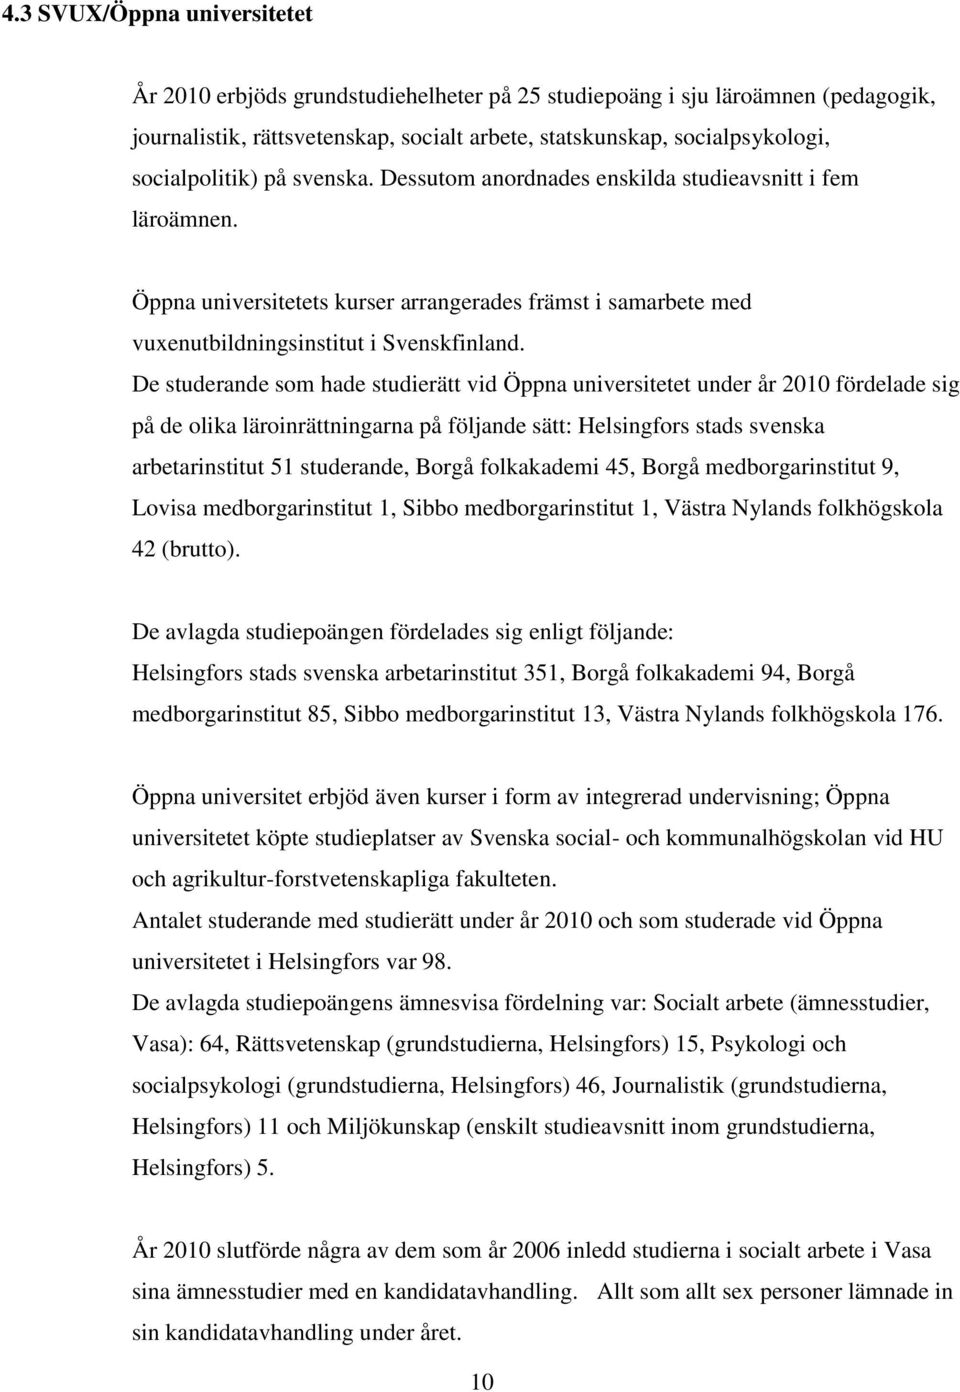 De studerande som hade studierätt vid Öppna universitetet under år 2010 fördelade sig på de olika läroinrättningarna på följande sätt: Helsingfors stads svenska arbetarinstitut 51 studerande, Borgå